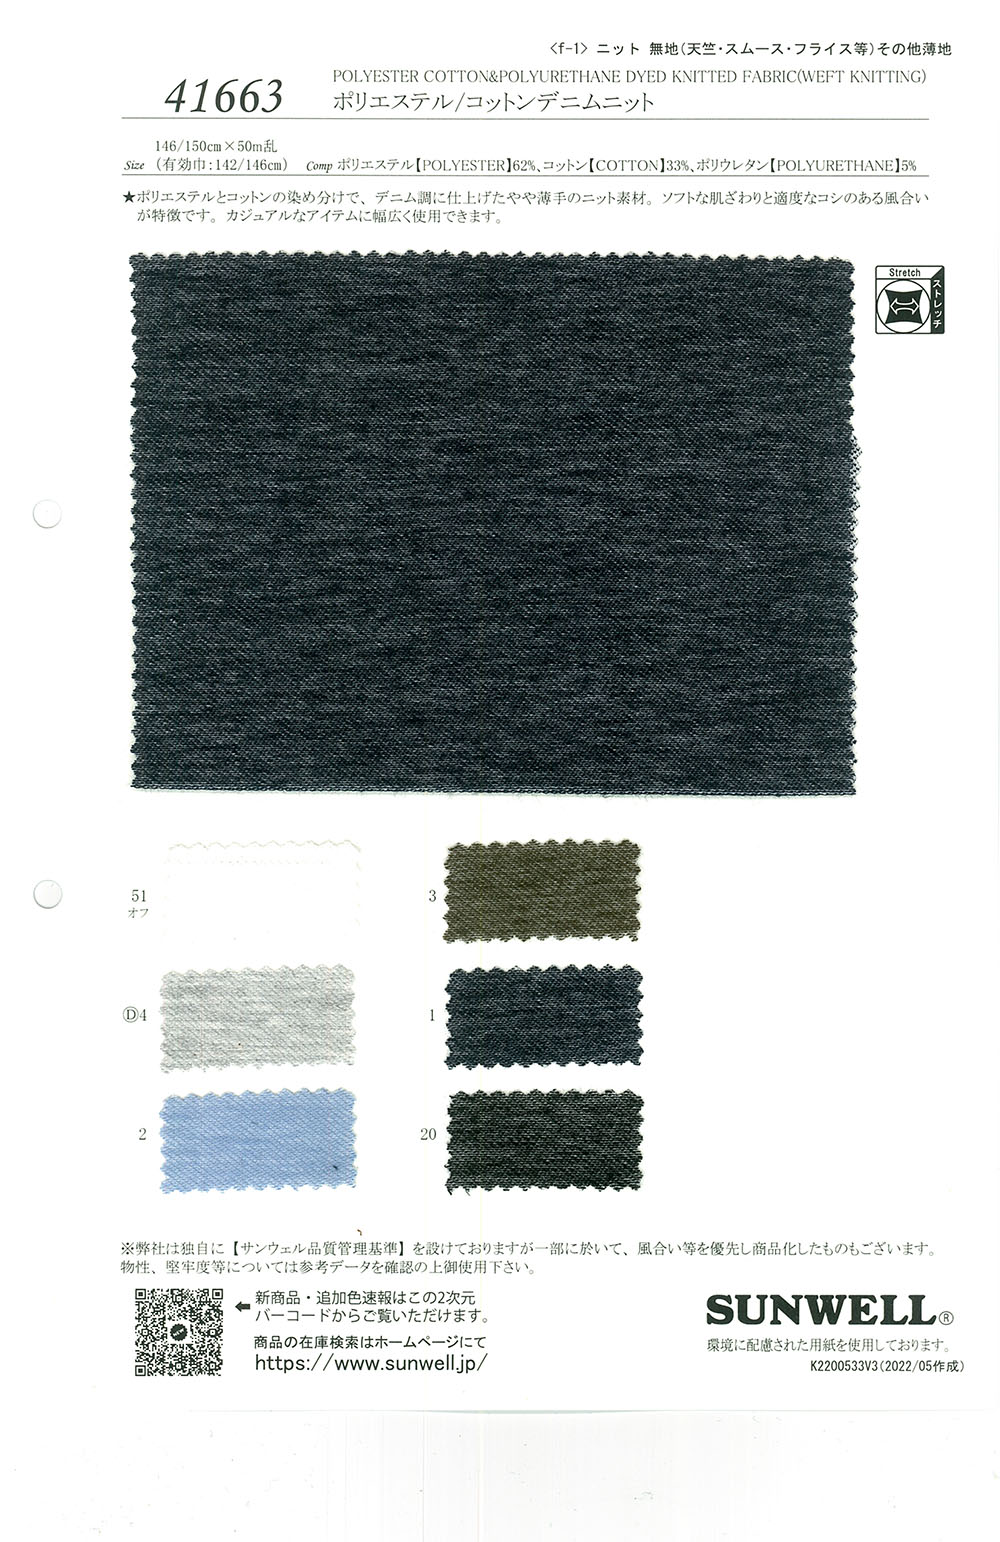 41663 Tejido Vaquero De Poliéster/algodón[Fabrica Textil] SUNWELL